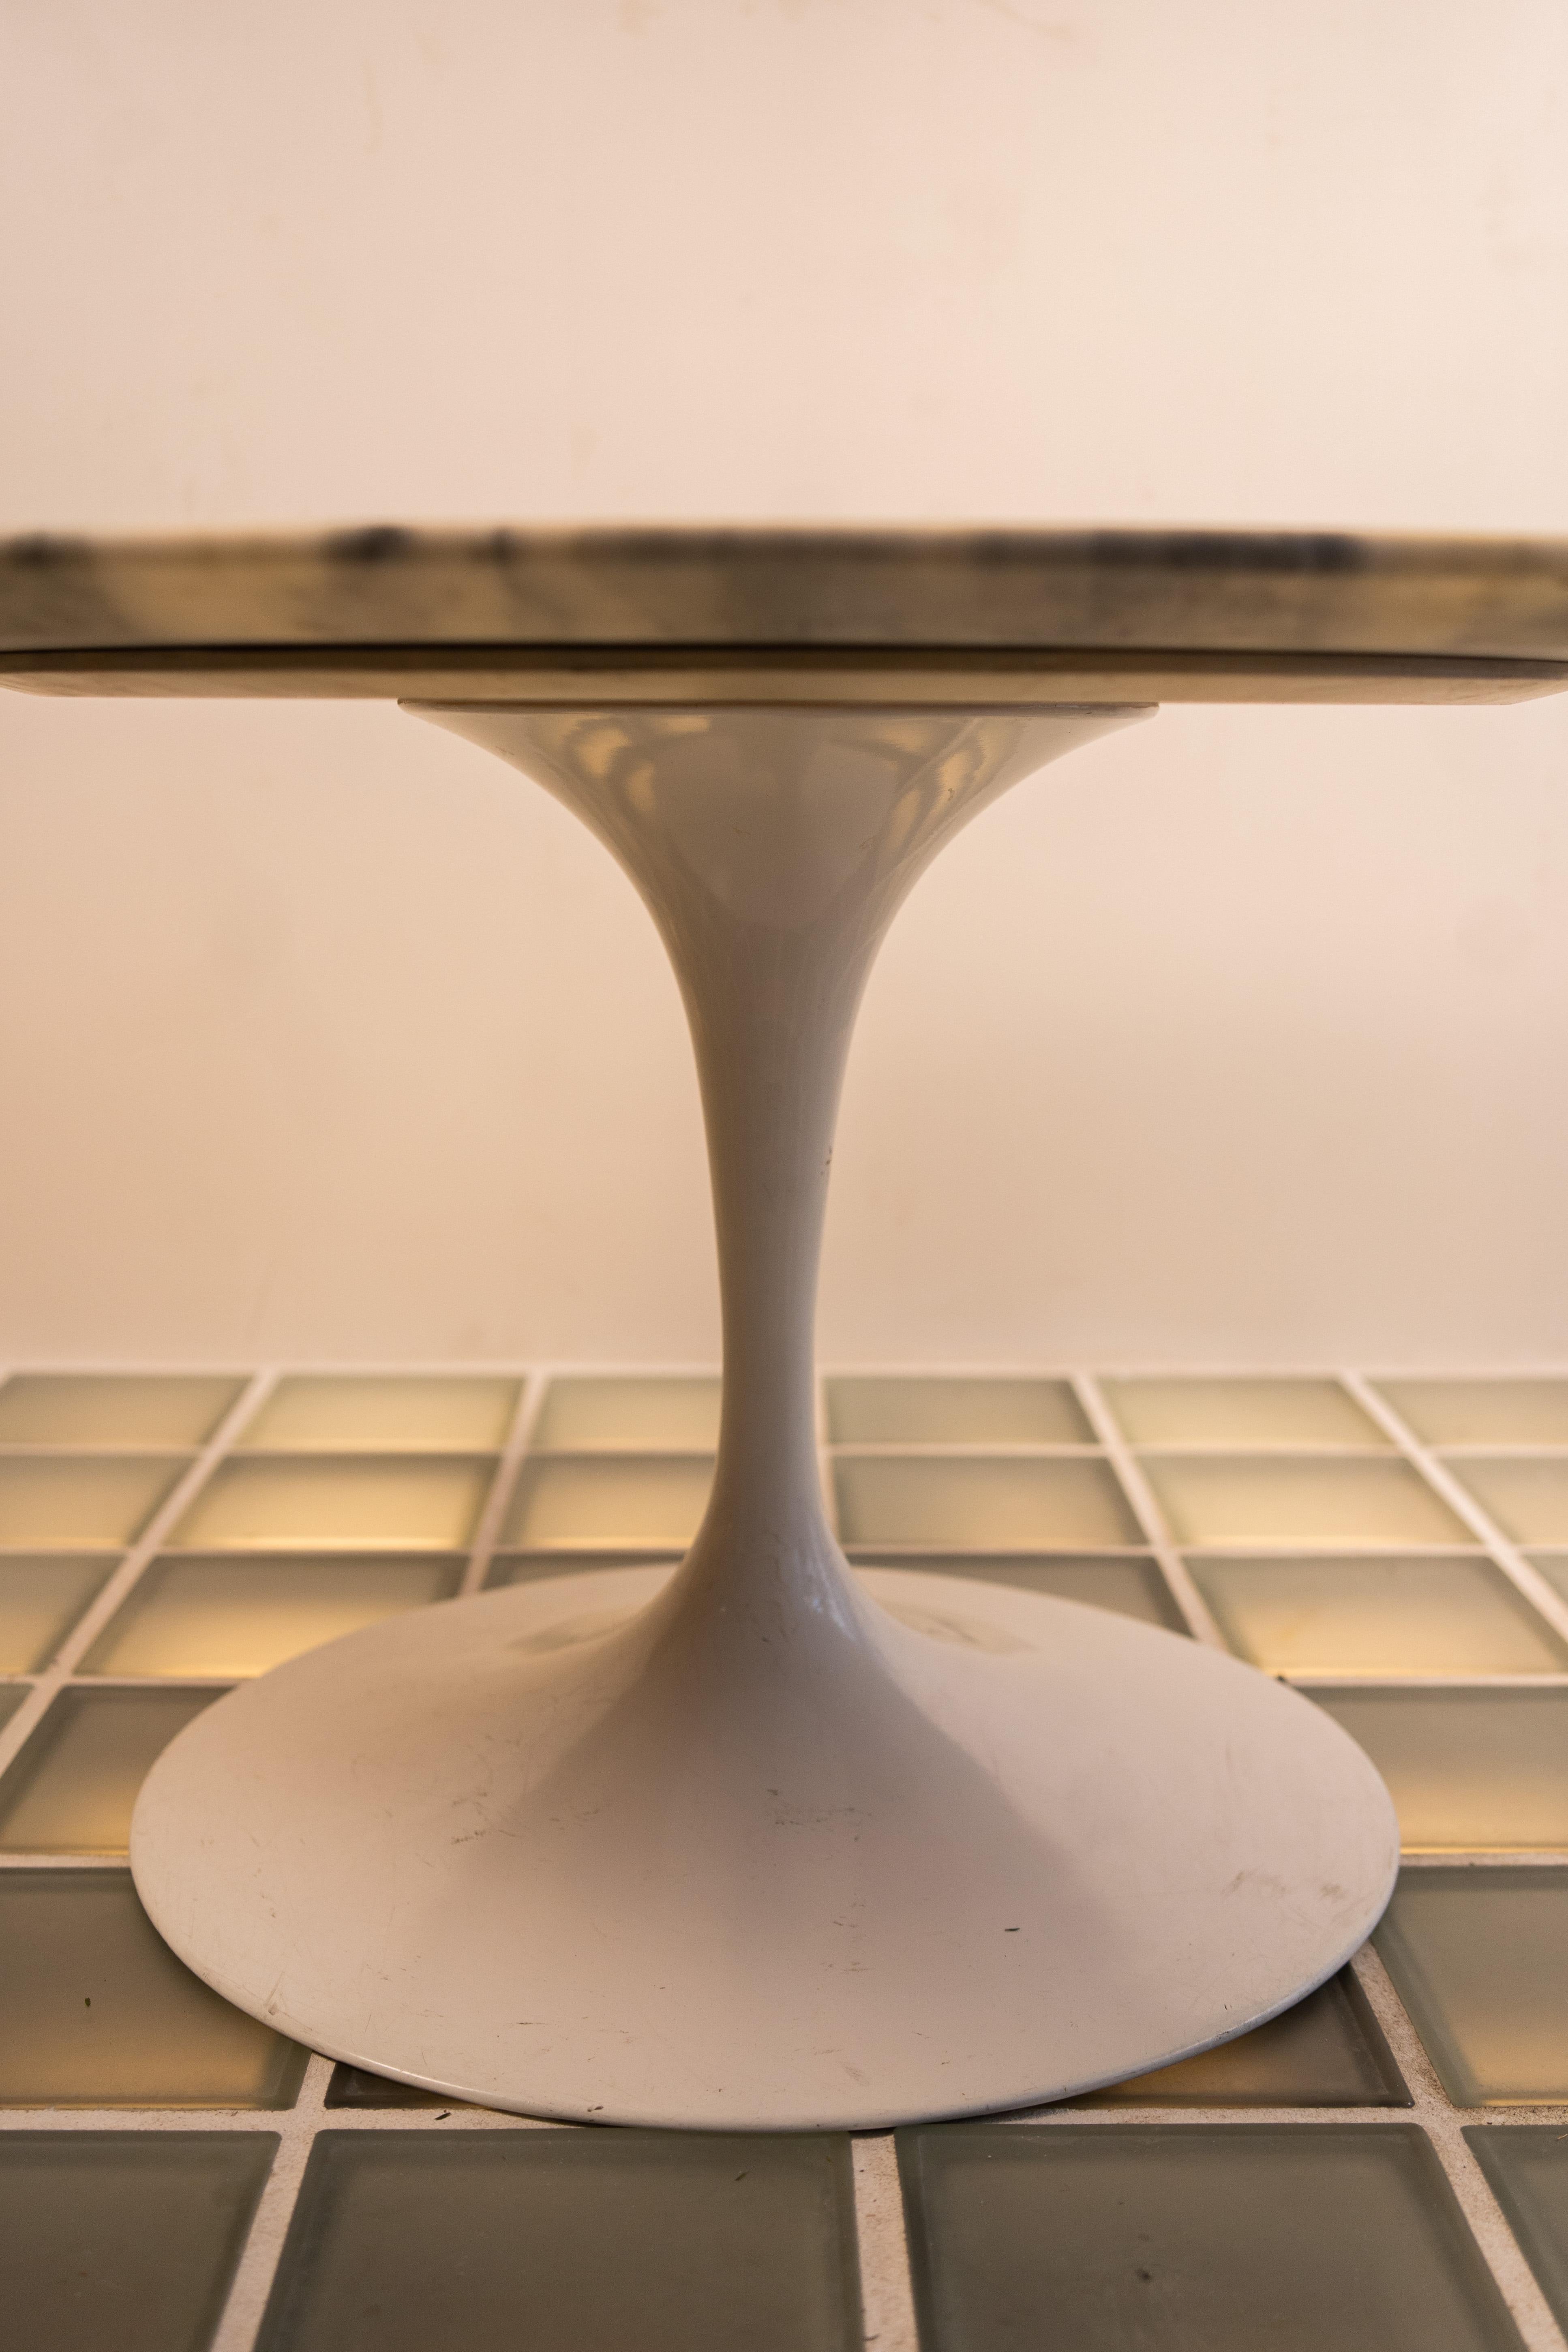 Table basse ovale Tulip en marbre par Eero Saarinen pour Knoll International
Collection S
Le plateau en marbre a une épaisseur de 2 cm ; le stratifié blanc a une épaisseur de 3 cm.
Le socle est lourd, en fonte d'aluminium moulé, protégé par du